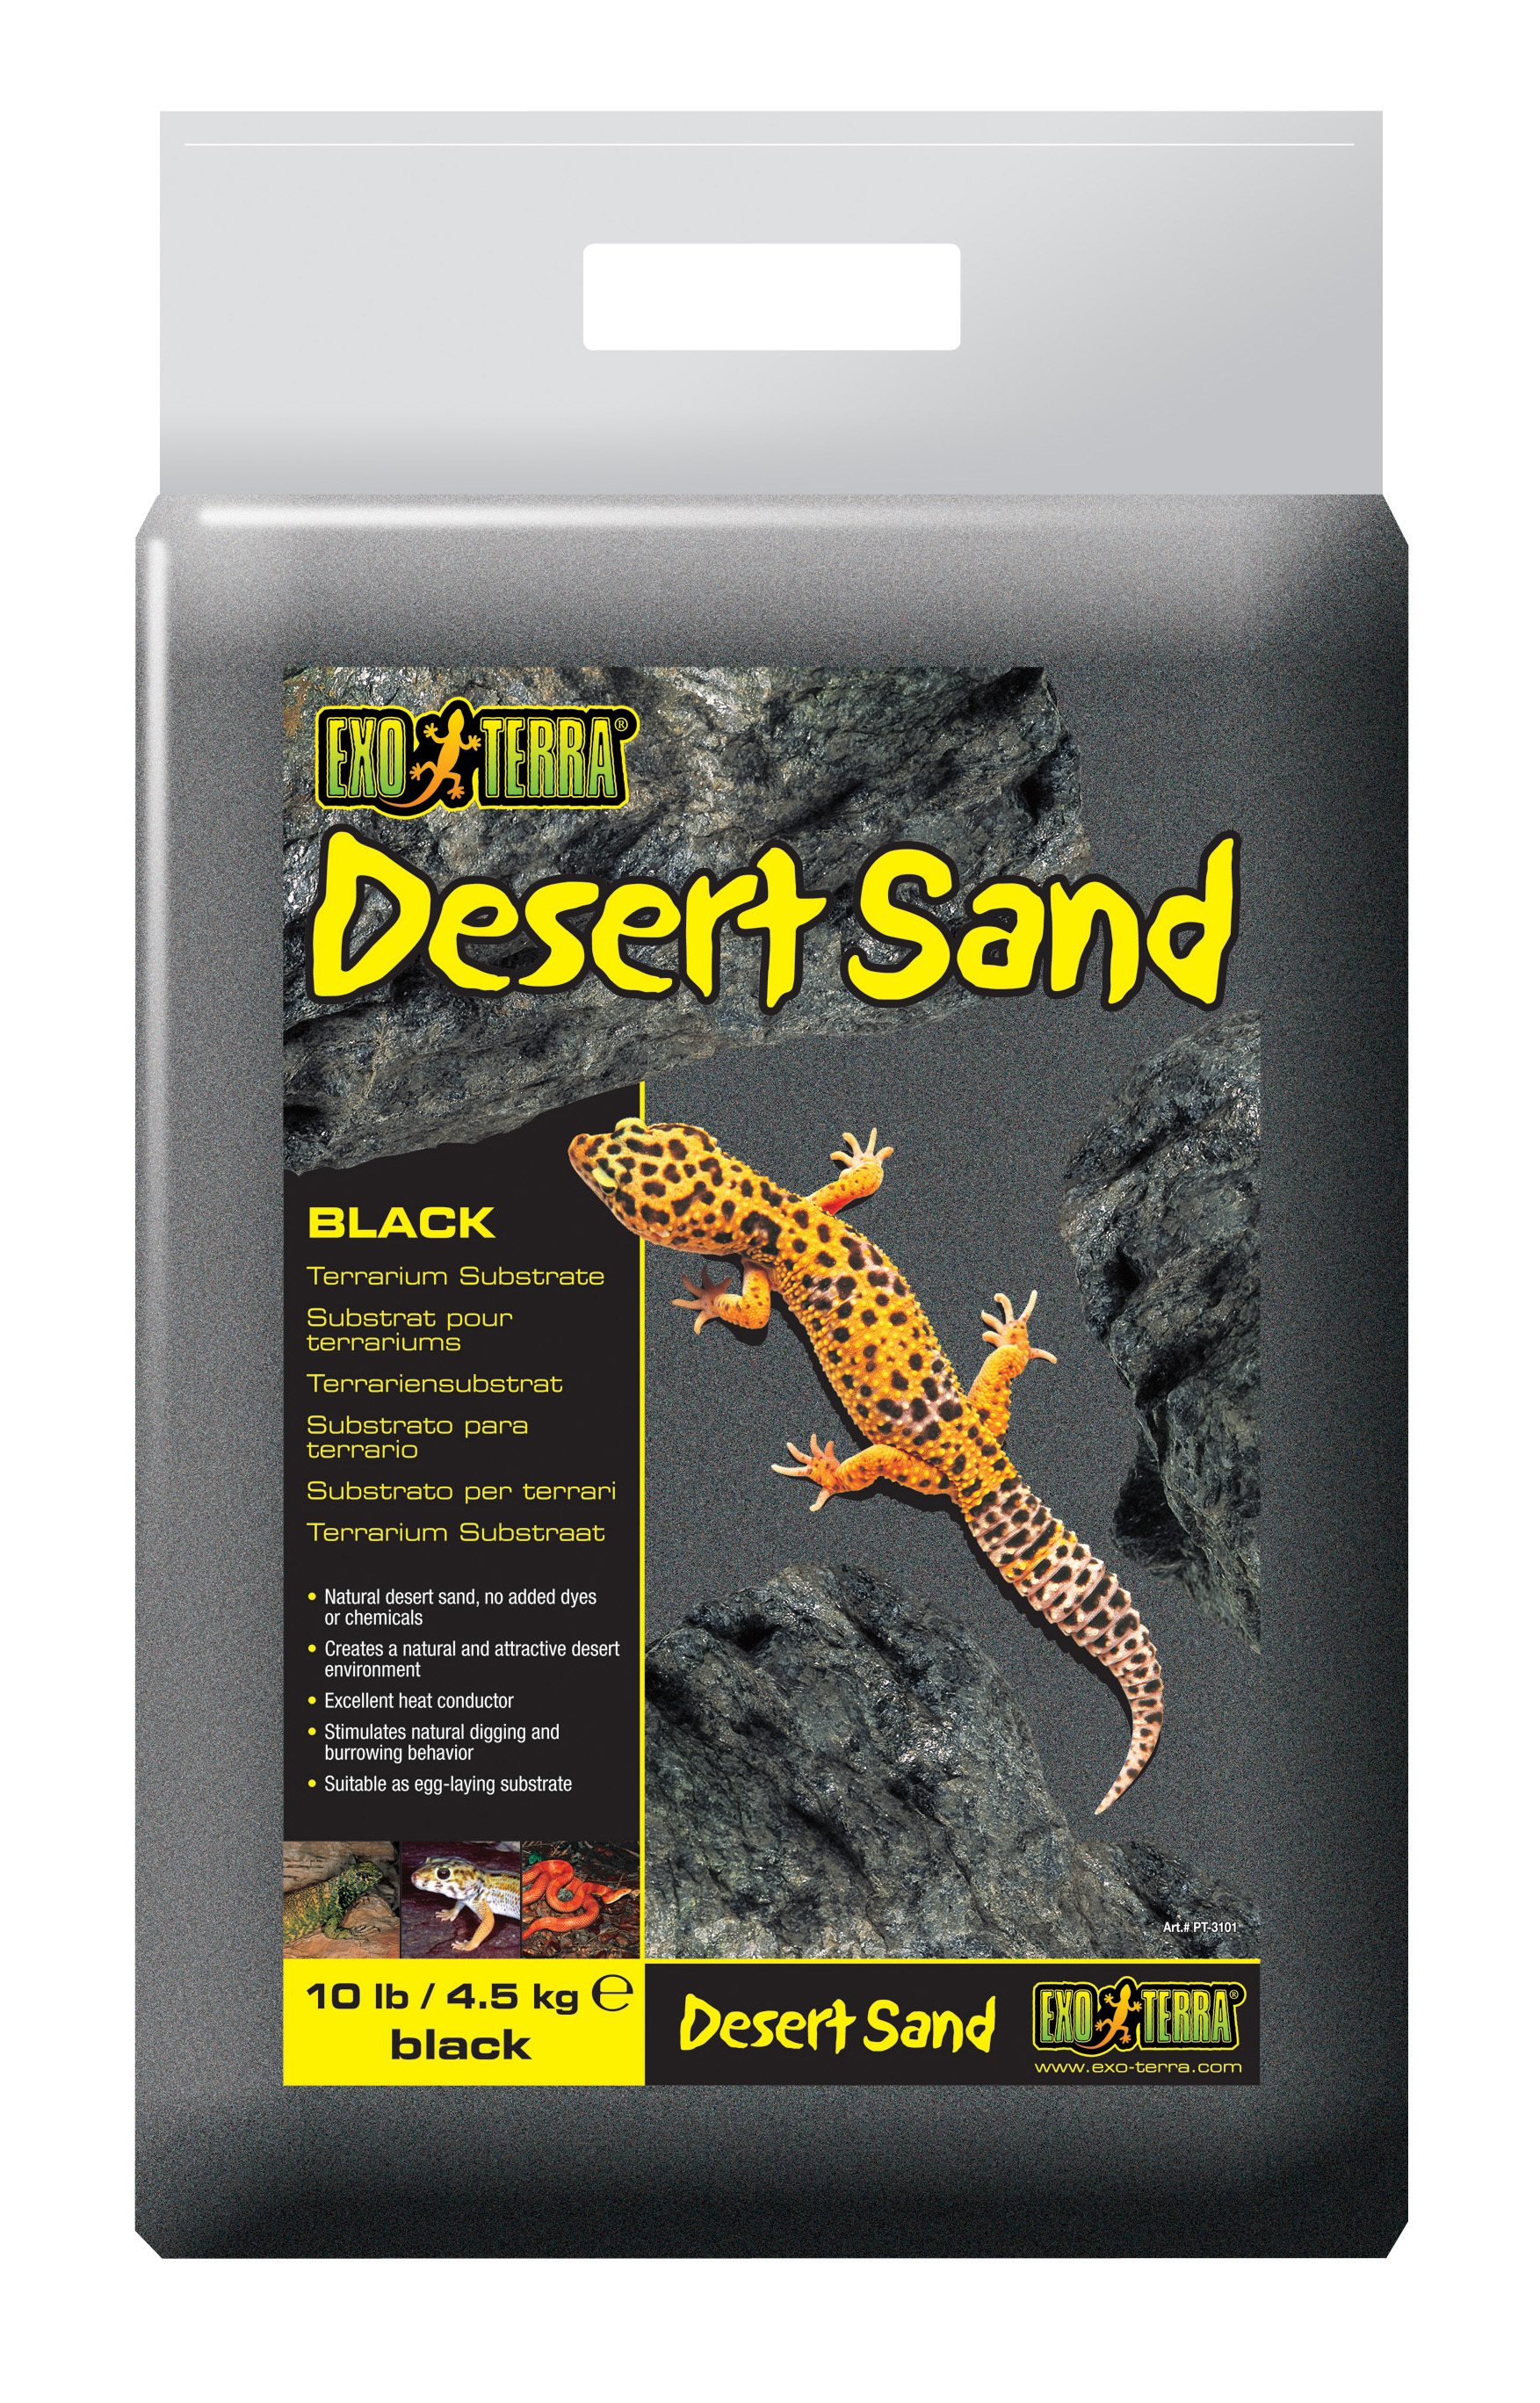 Ex desert sand gravel black - Product shot